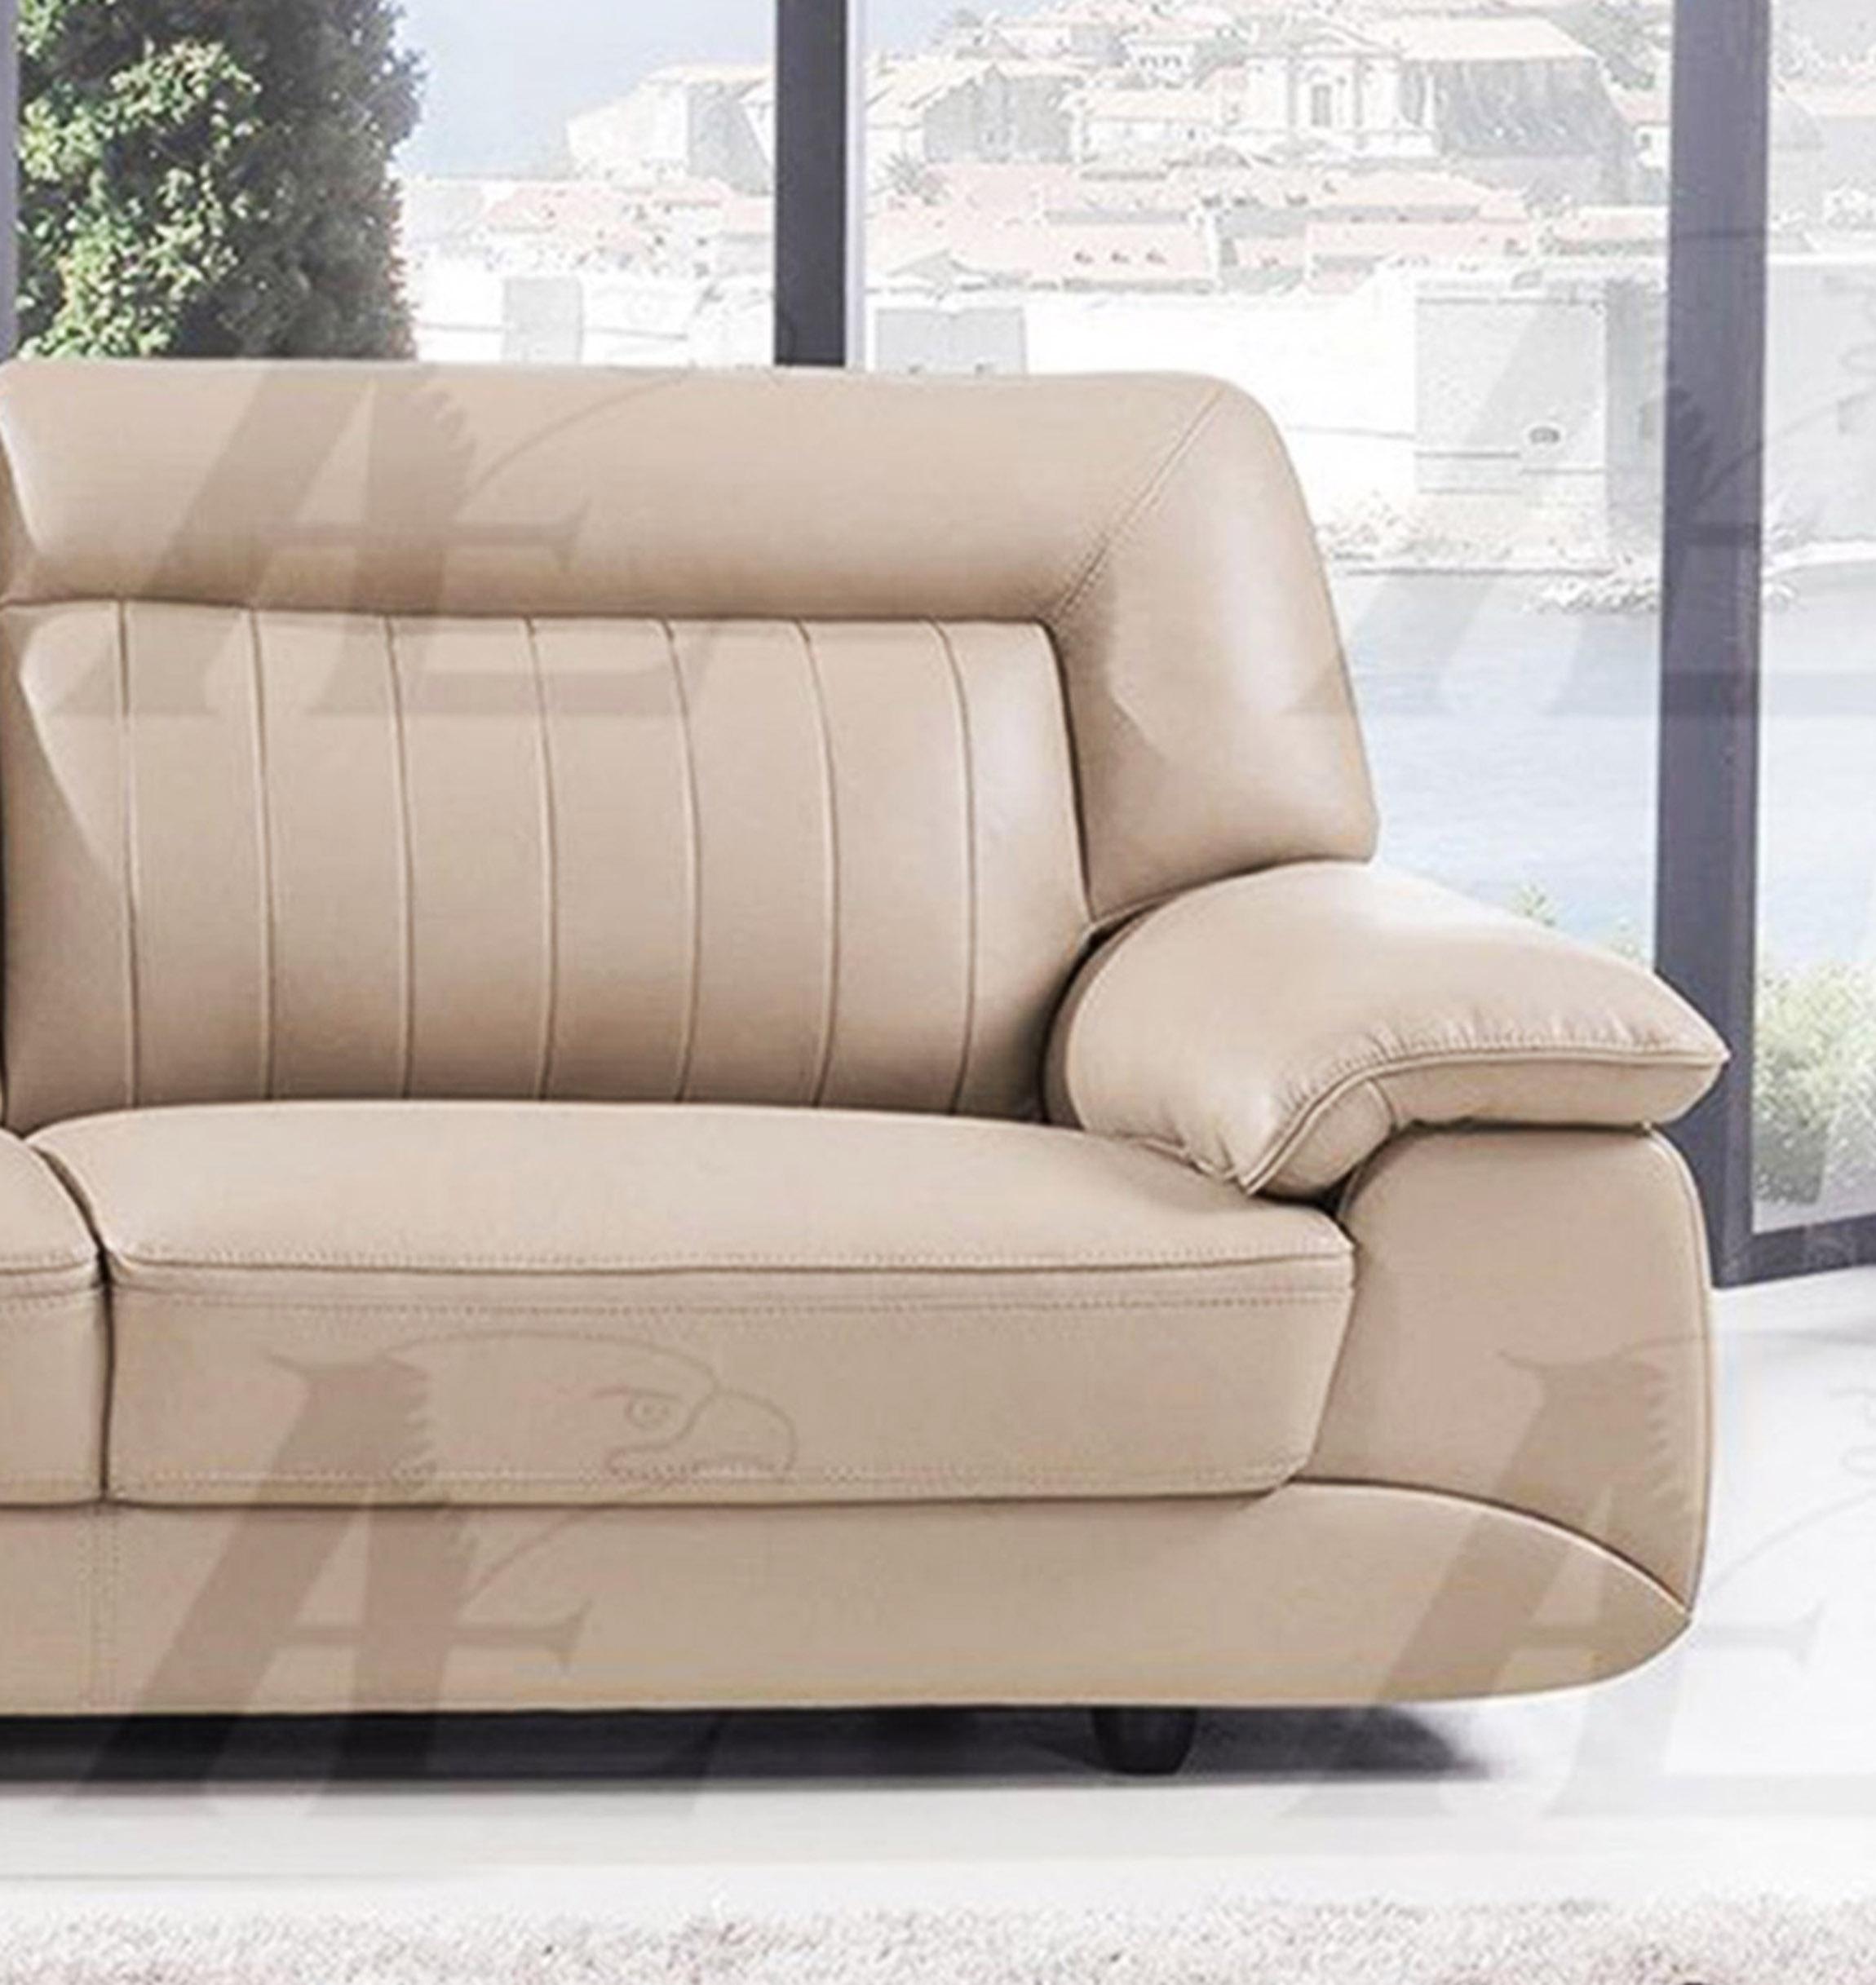 

    
EK072-TAN Set-2 American Eagle Furniture Sofa and Loveseat Set
